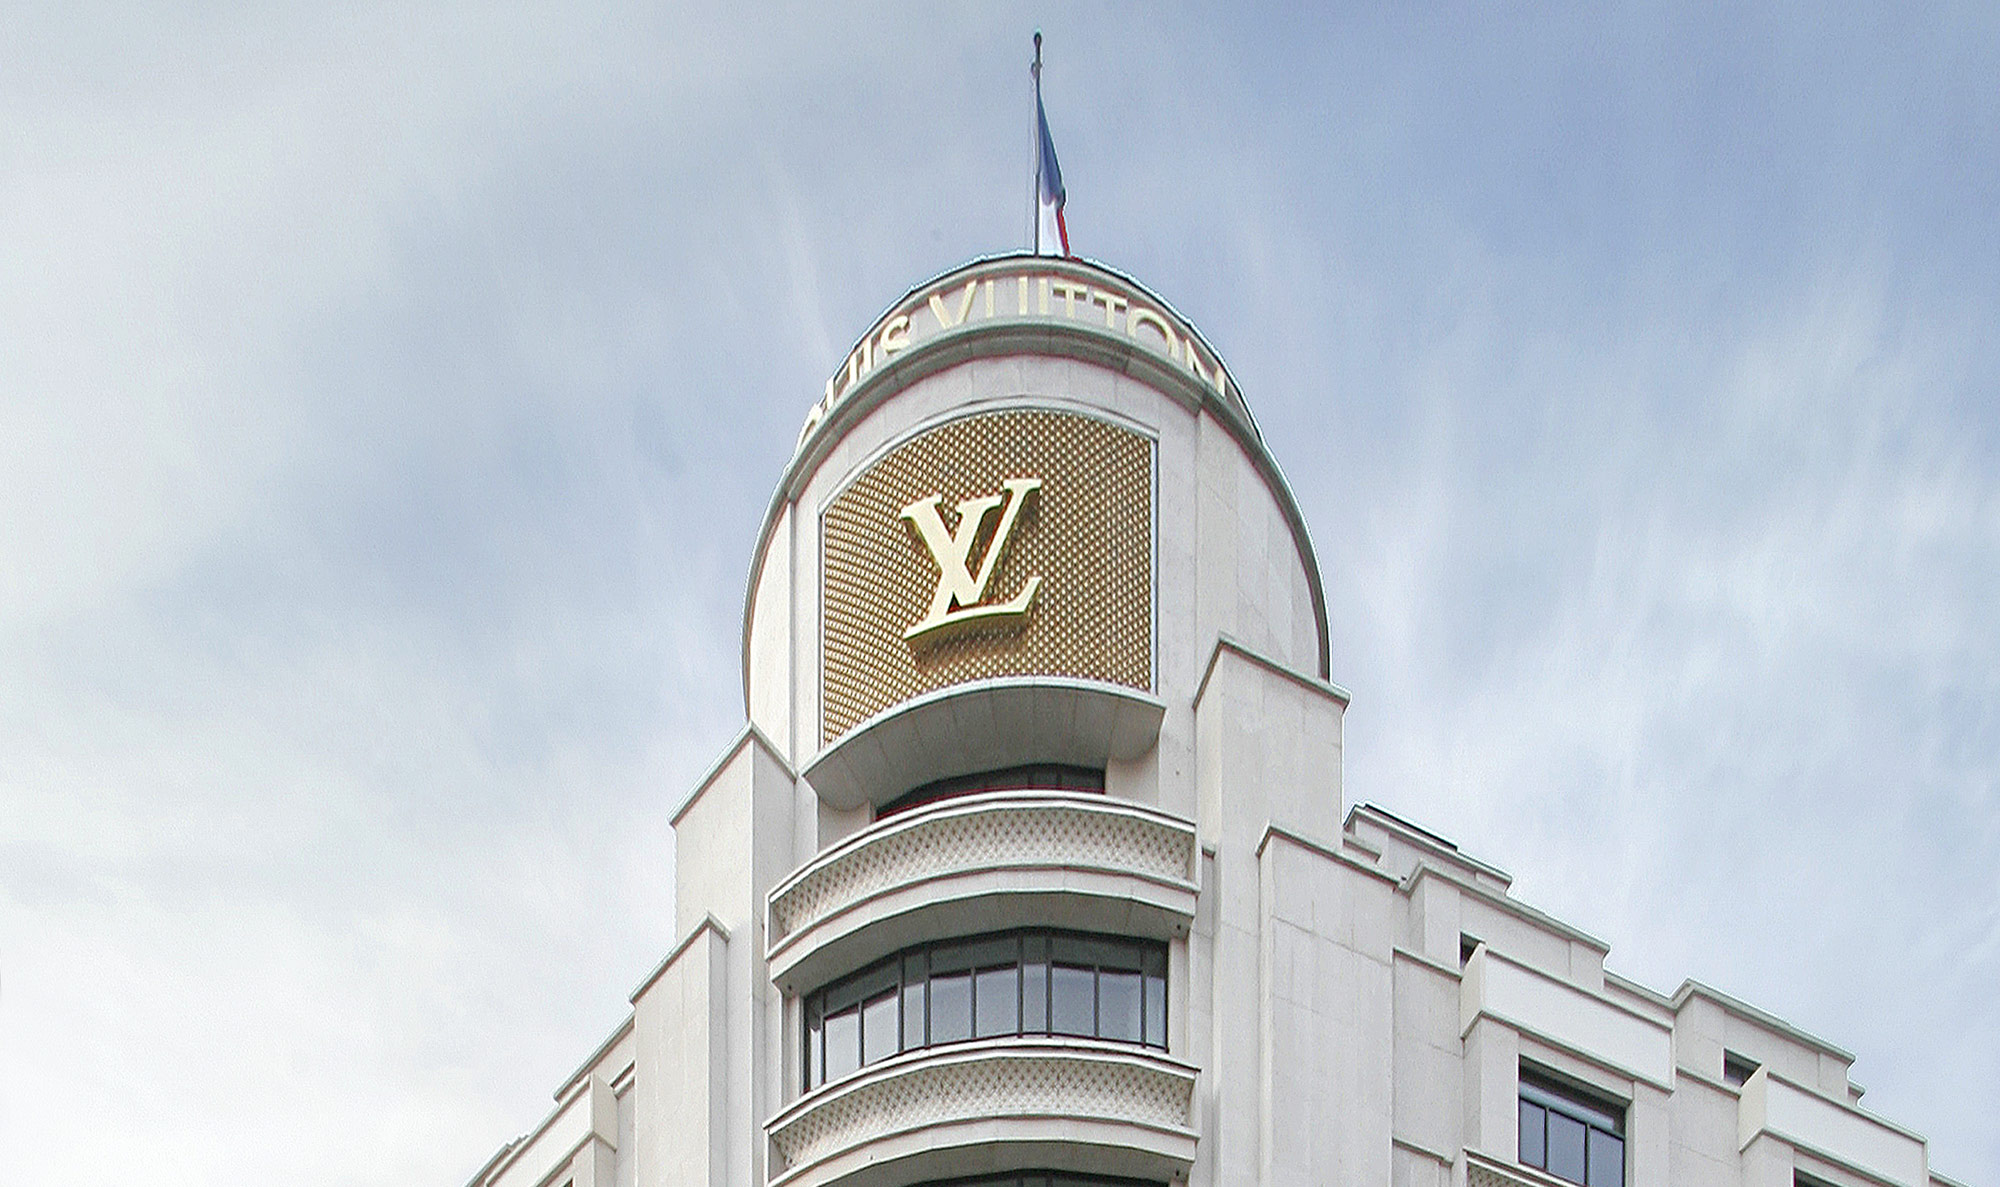 Louis Vuitton historical building - Carbondale